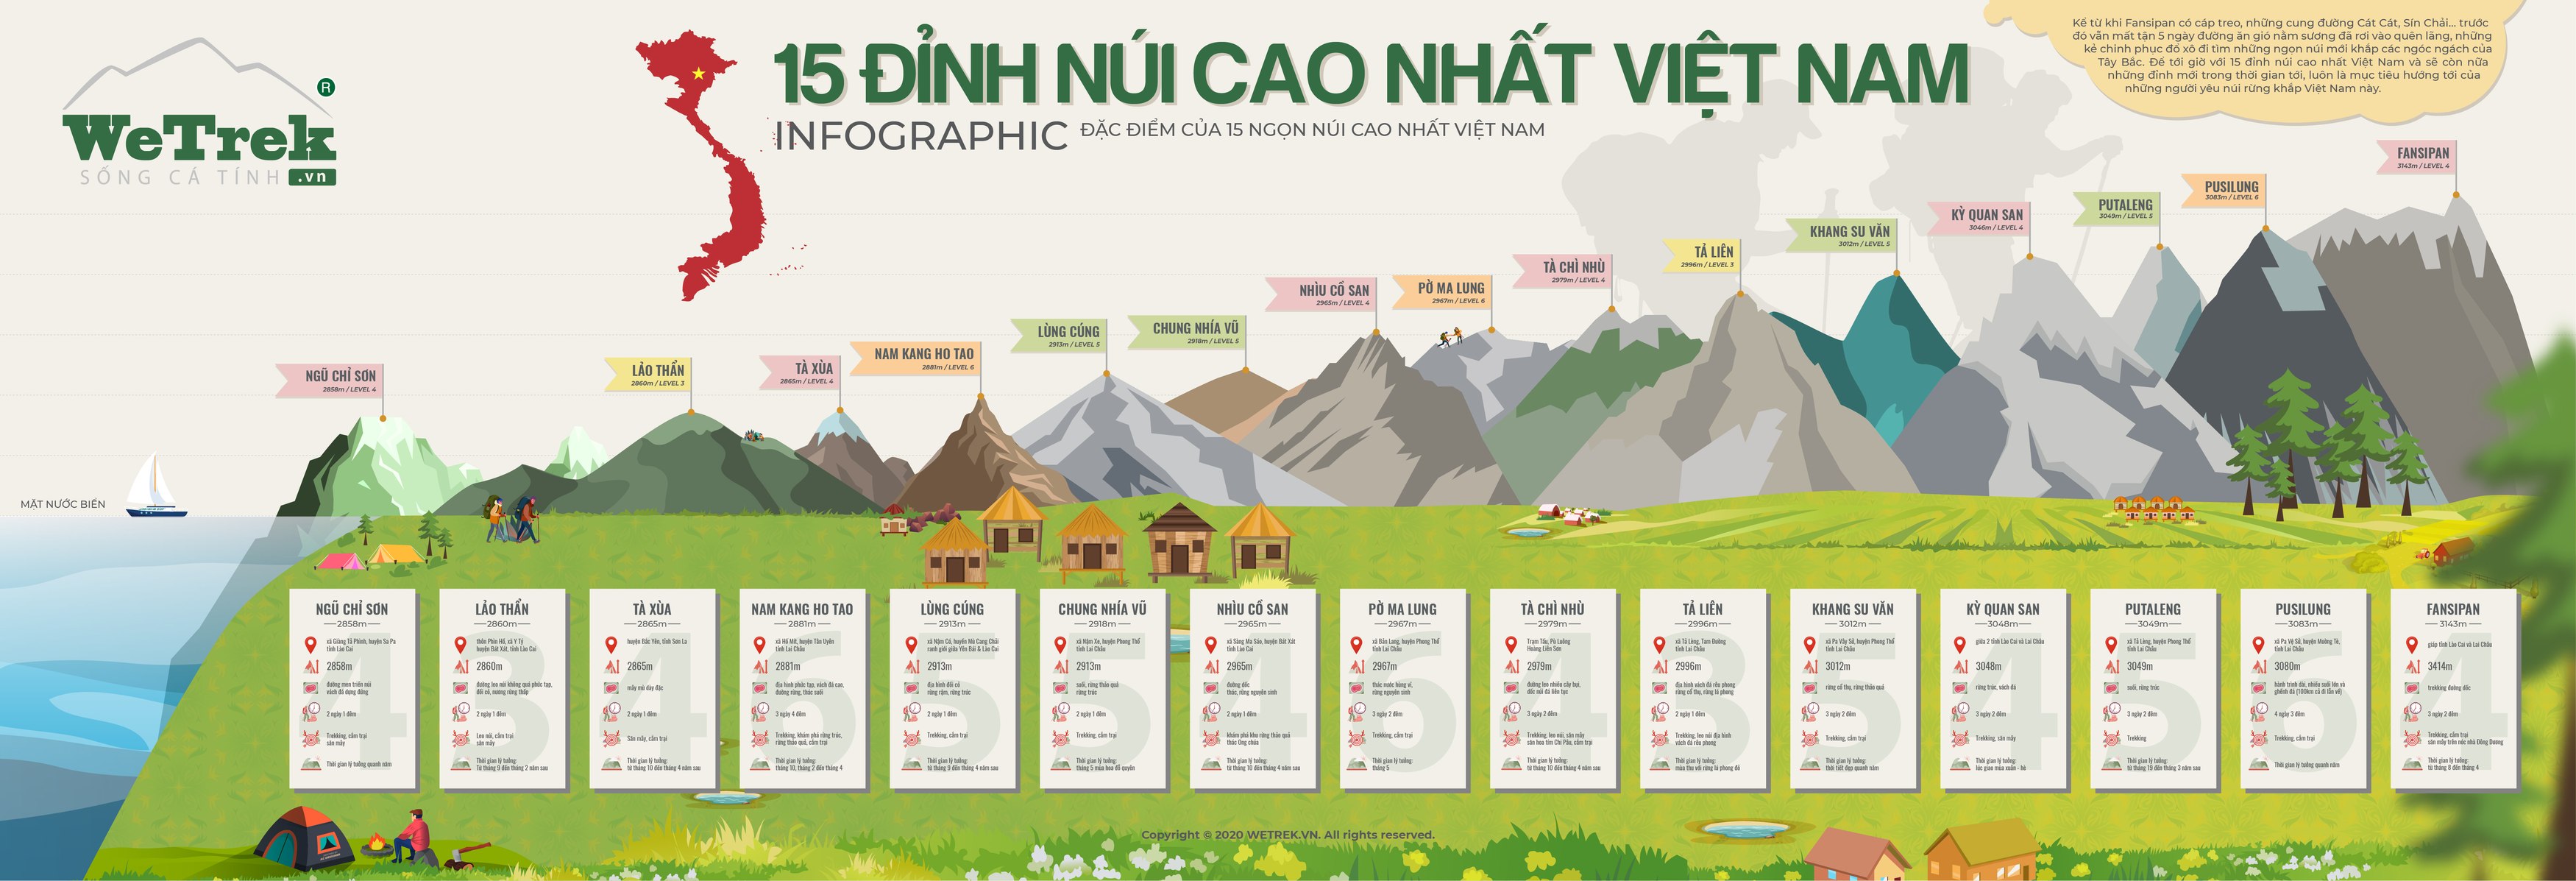 Top 15 đỉnh núi cao nhất Việt Nam